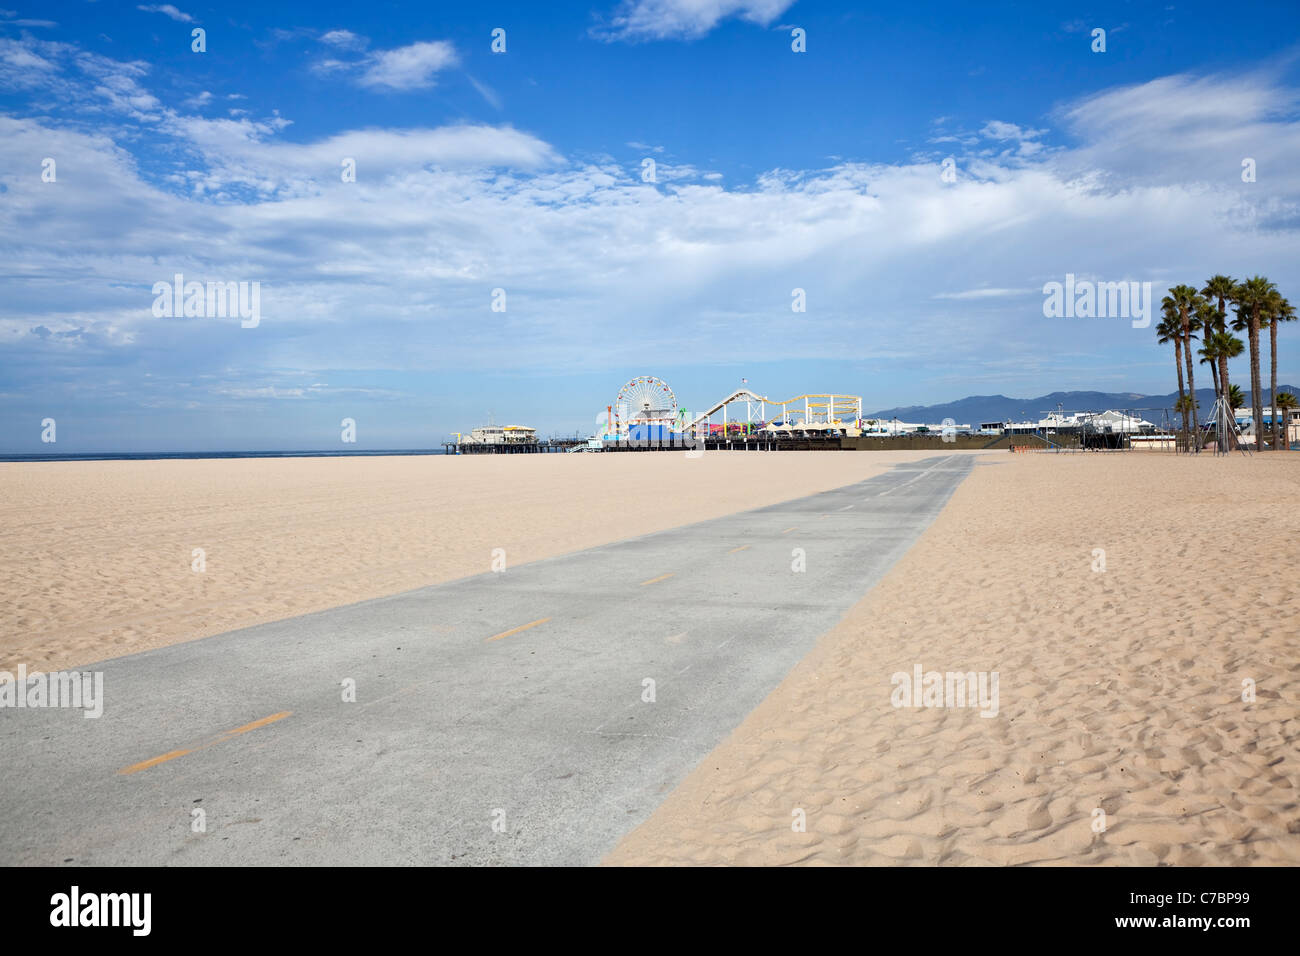 Célèbre Santa Monica beach bike path et amusement pier. Banque D'Images